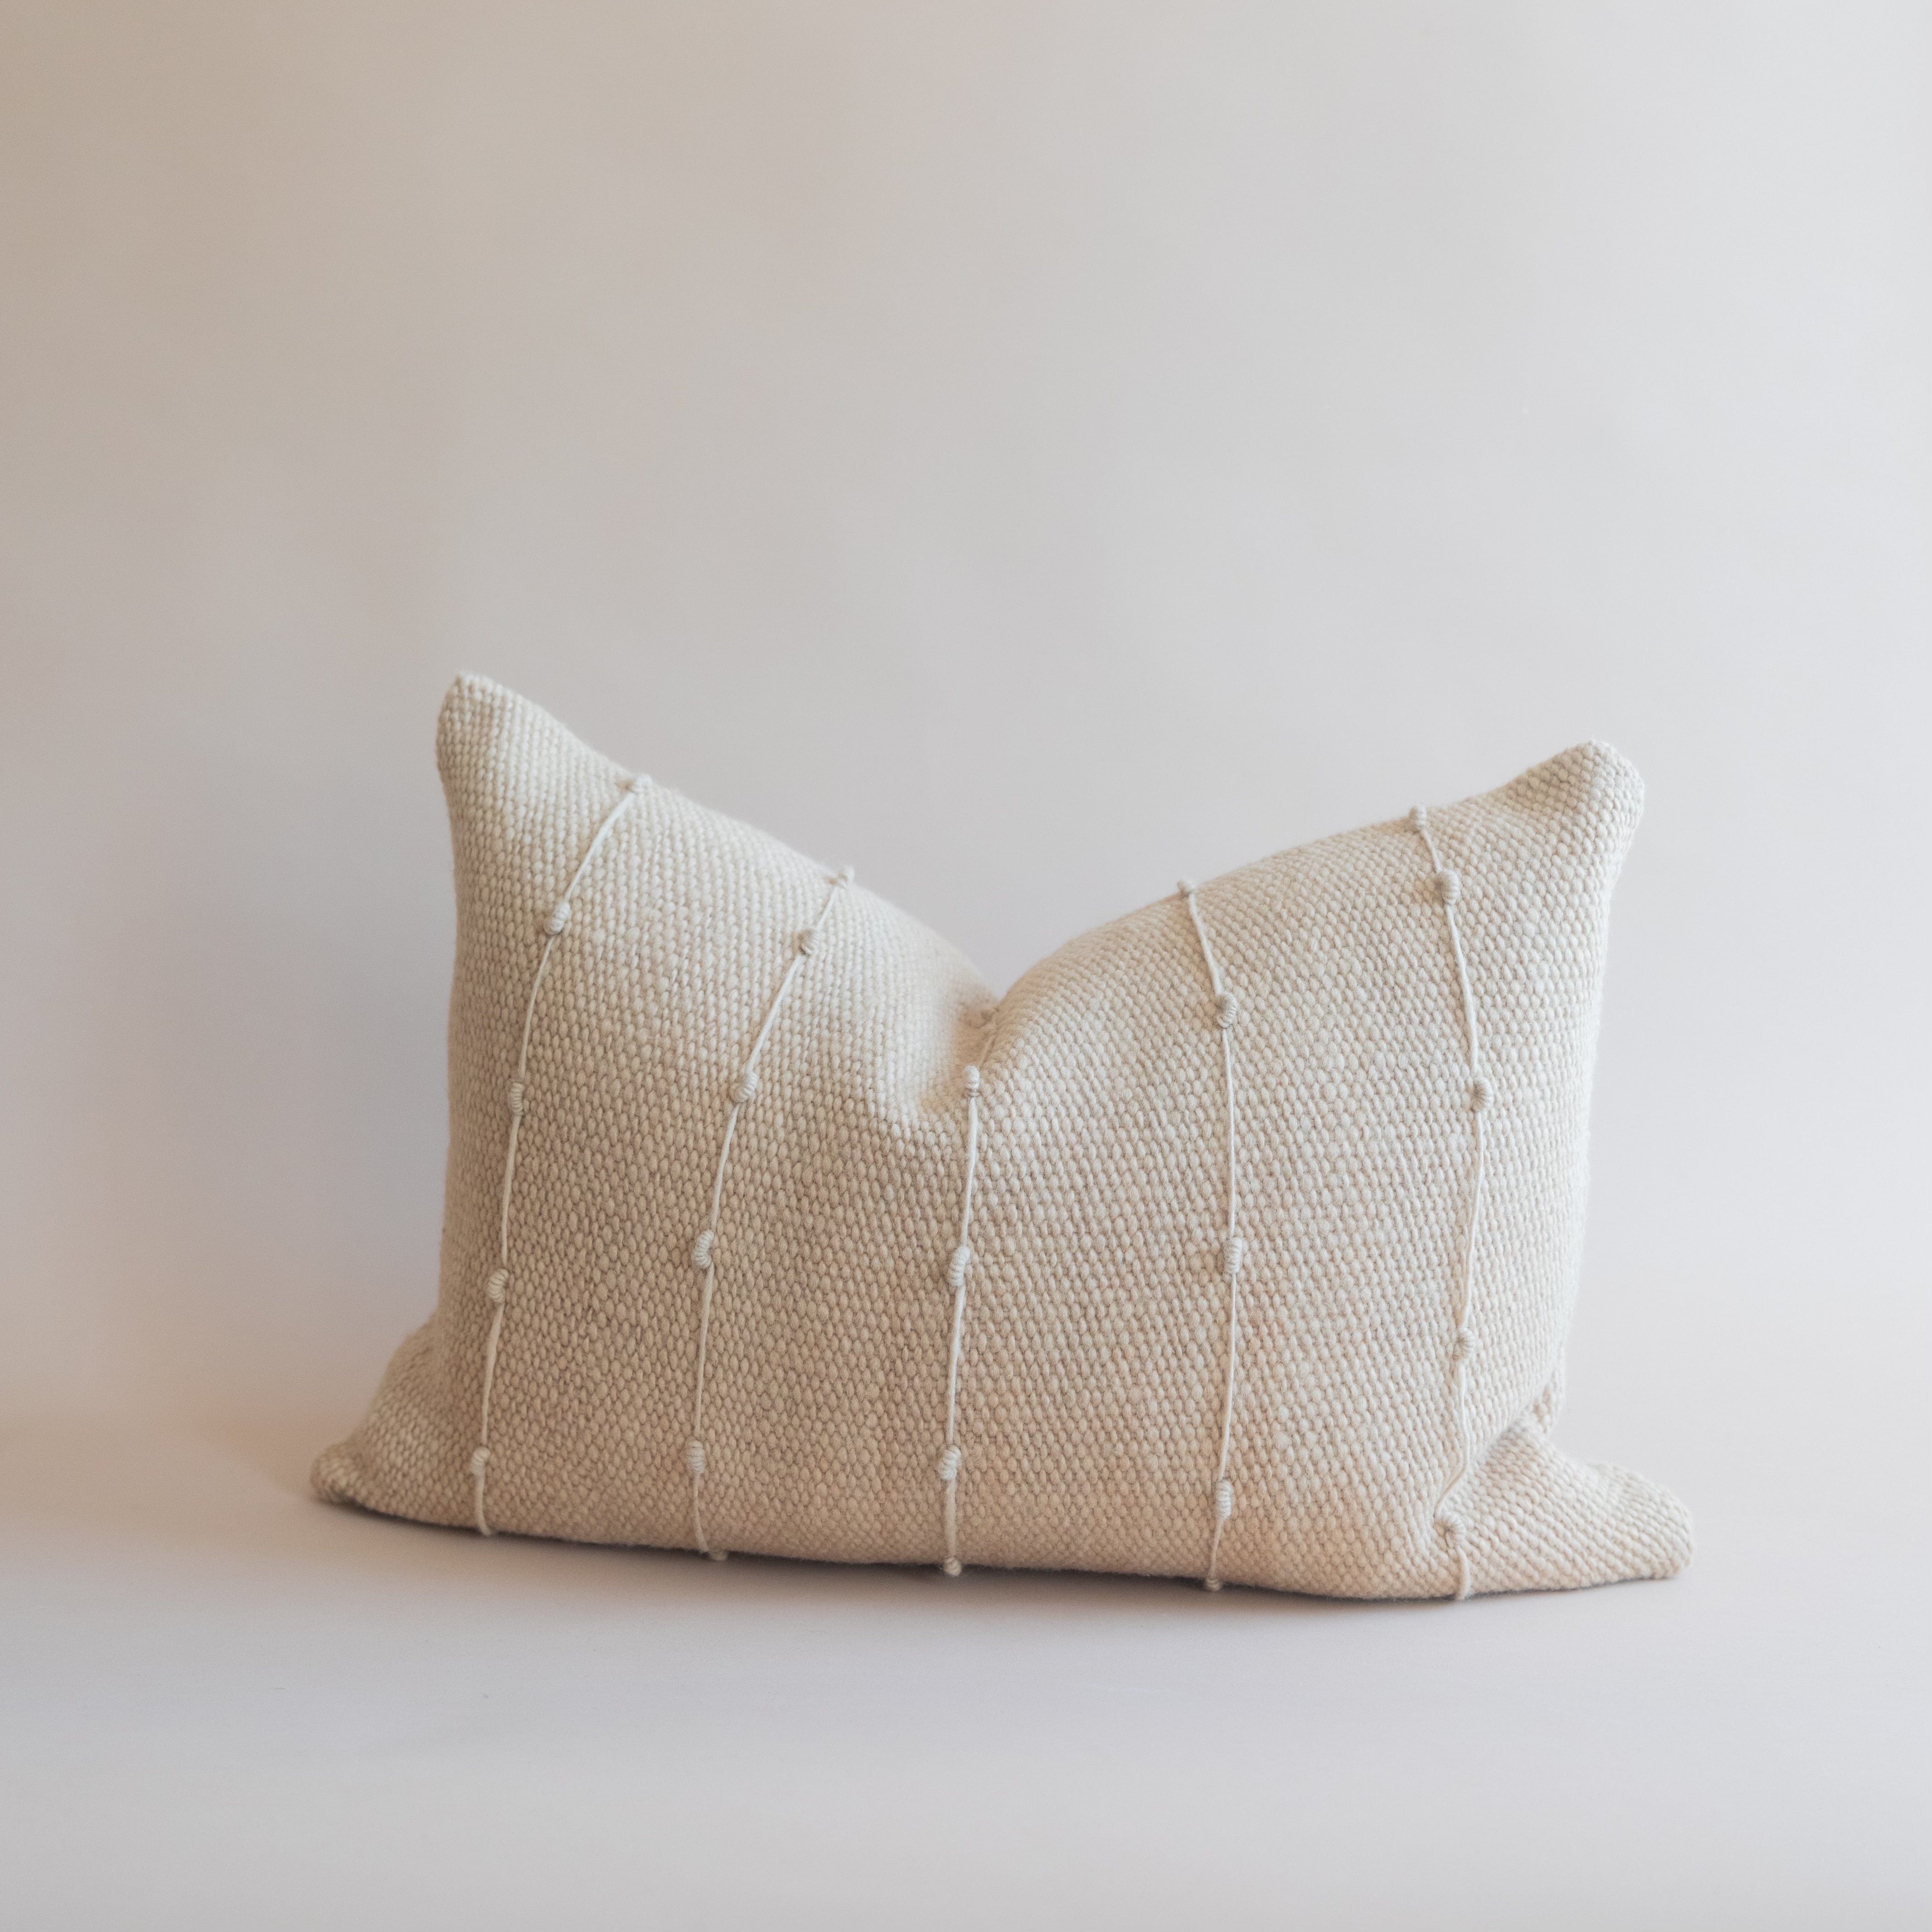 Treko Pillows Textured Stripes Pillow by Treko